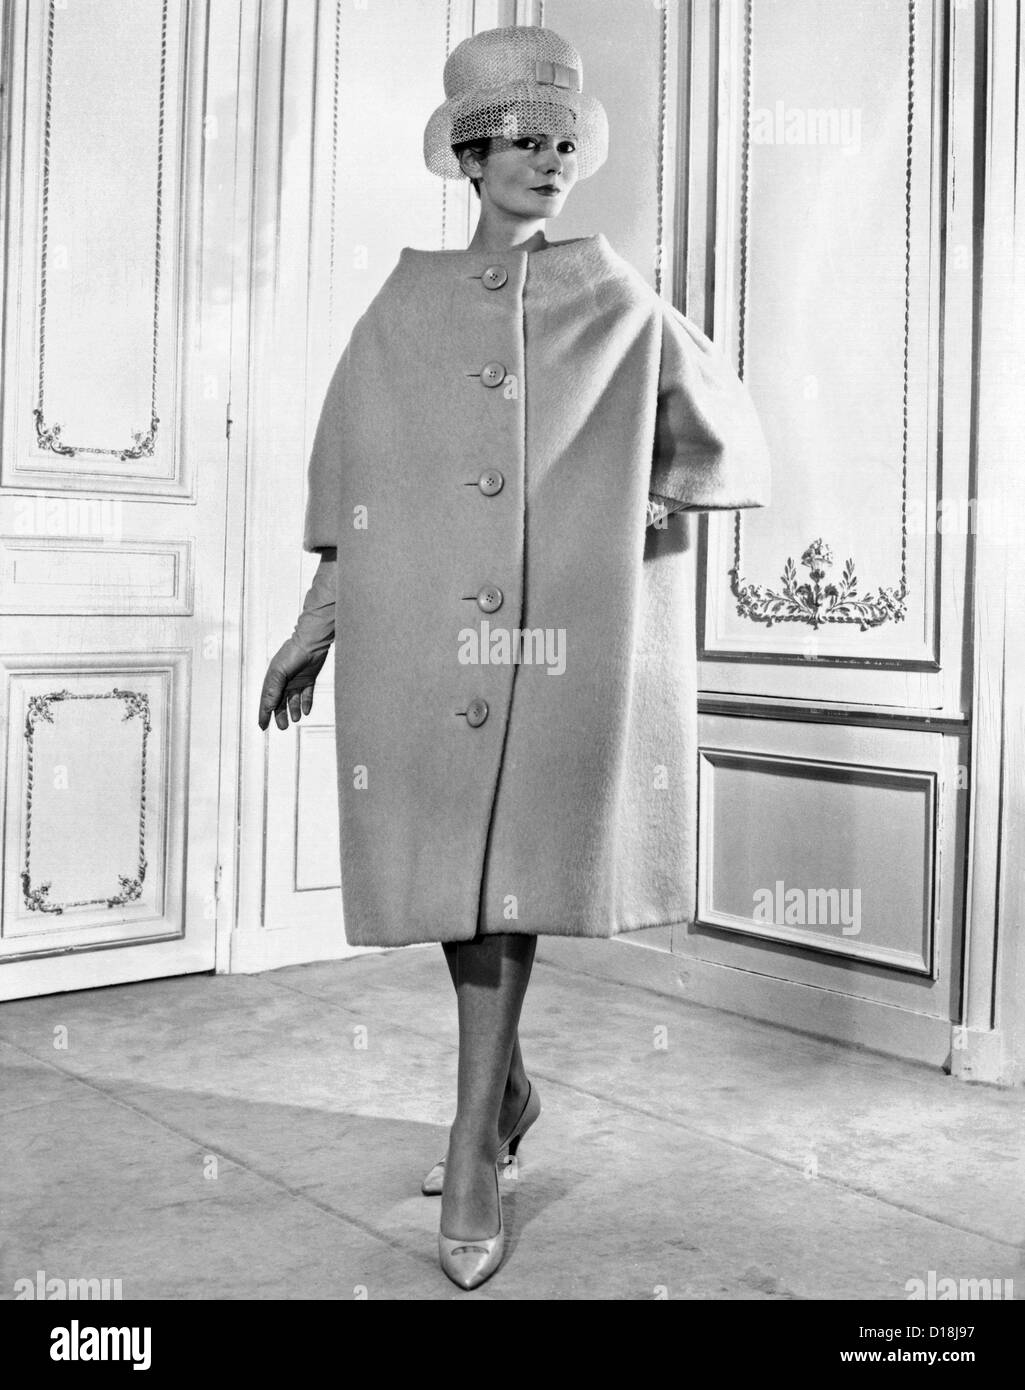 Pierre Cardin Damen voluminöse Mantel. Es hat einfache Linien, fällt von den Schultern über den Körper, wie ein Zelt. Februar 1959. Stockfoto